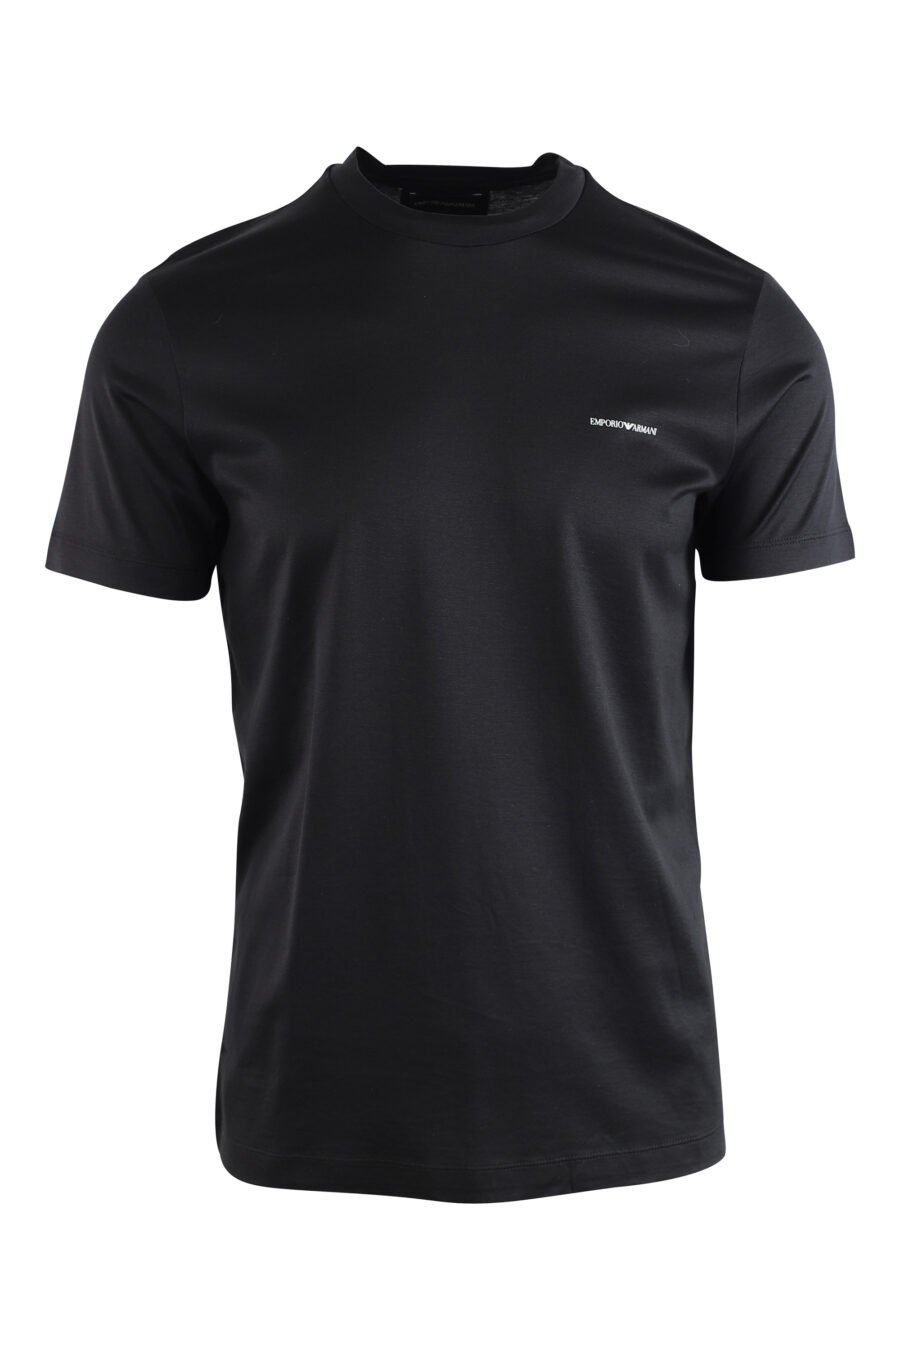 T-shirt schwarz mit kleinem weißen Logo - IMG 3741